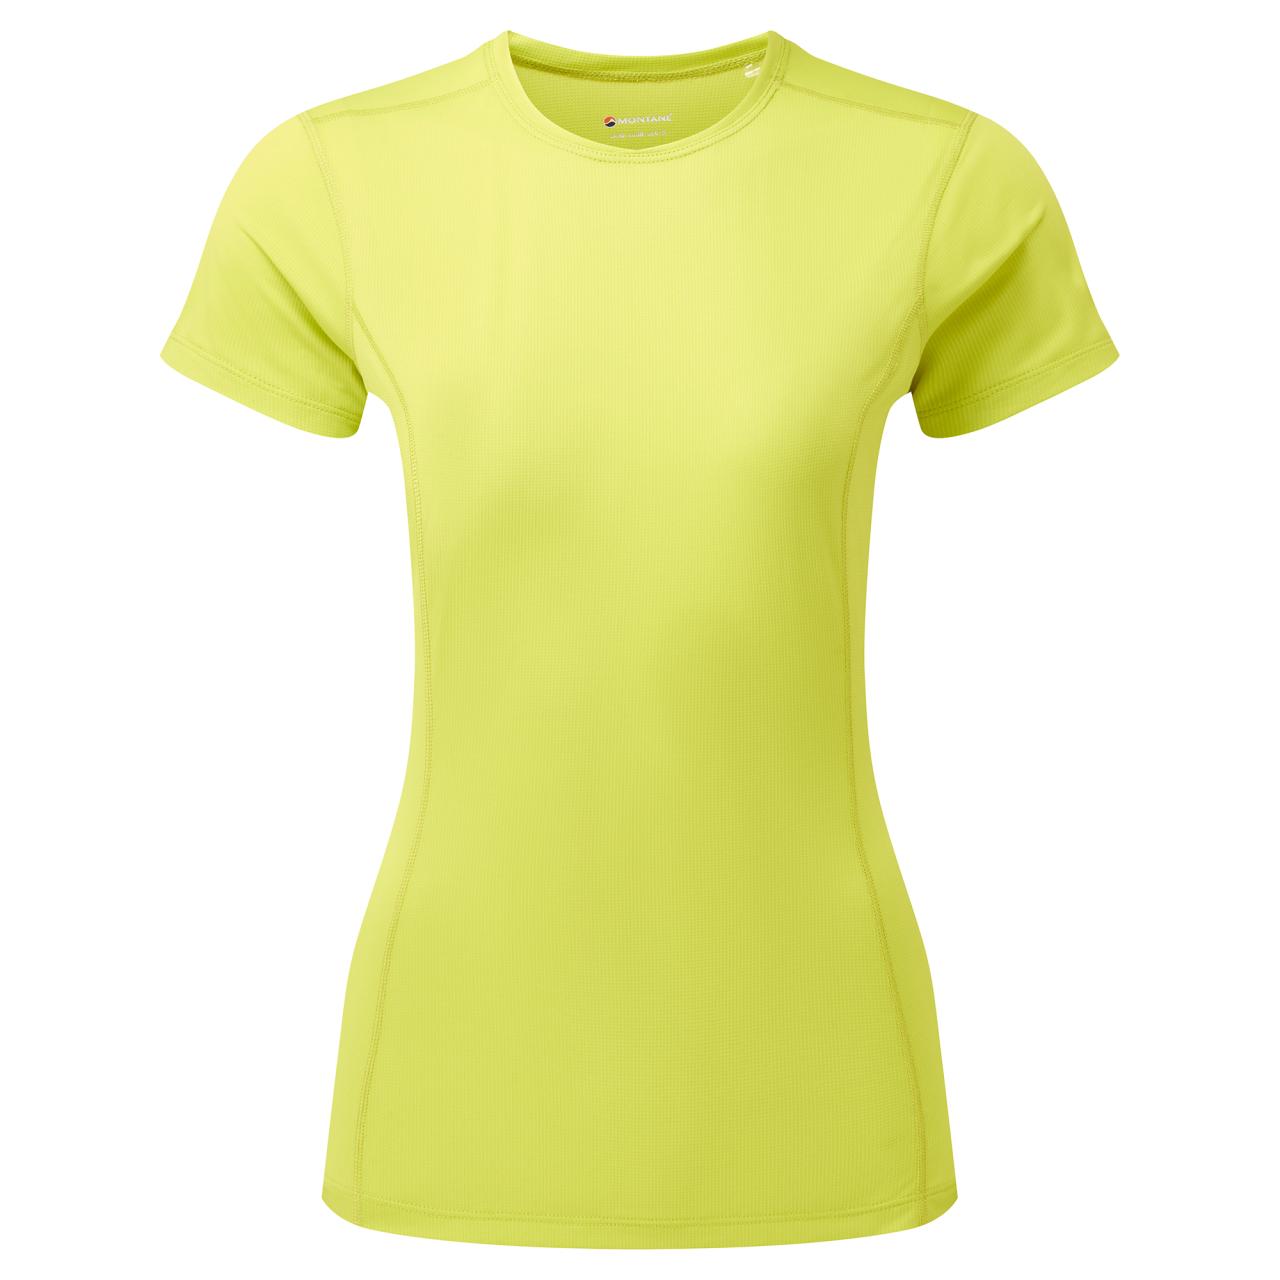 FEM DART LITE T-SHIRT-CITRUS SPRING-UK16/XL dámské triko žlutozelené